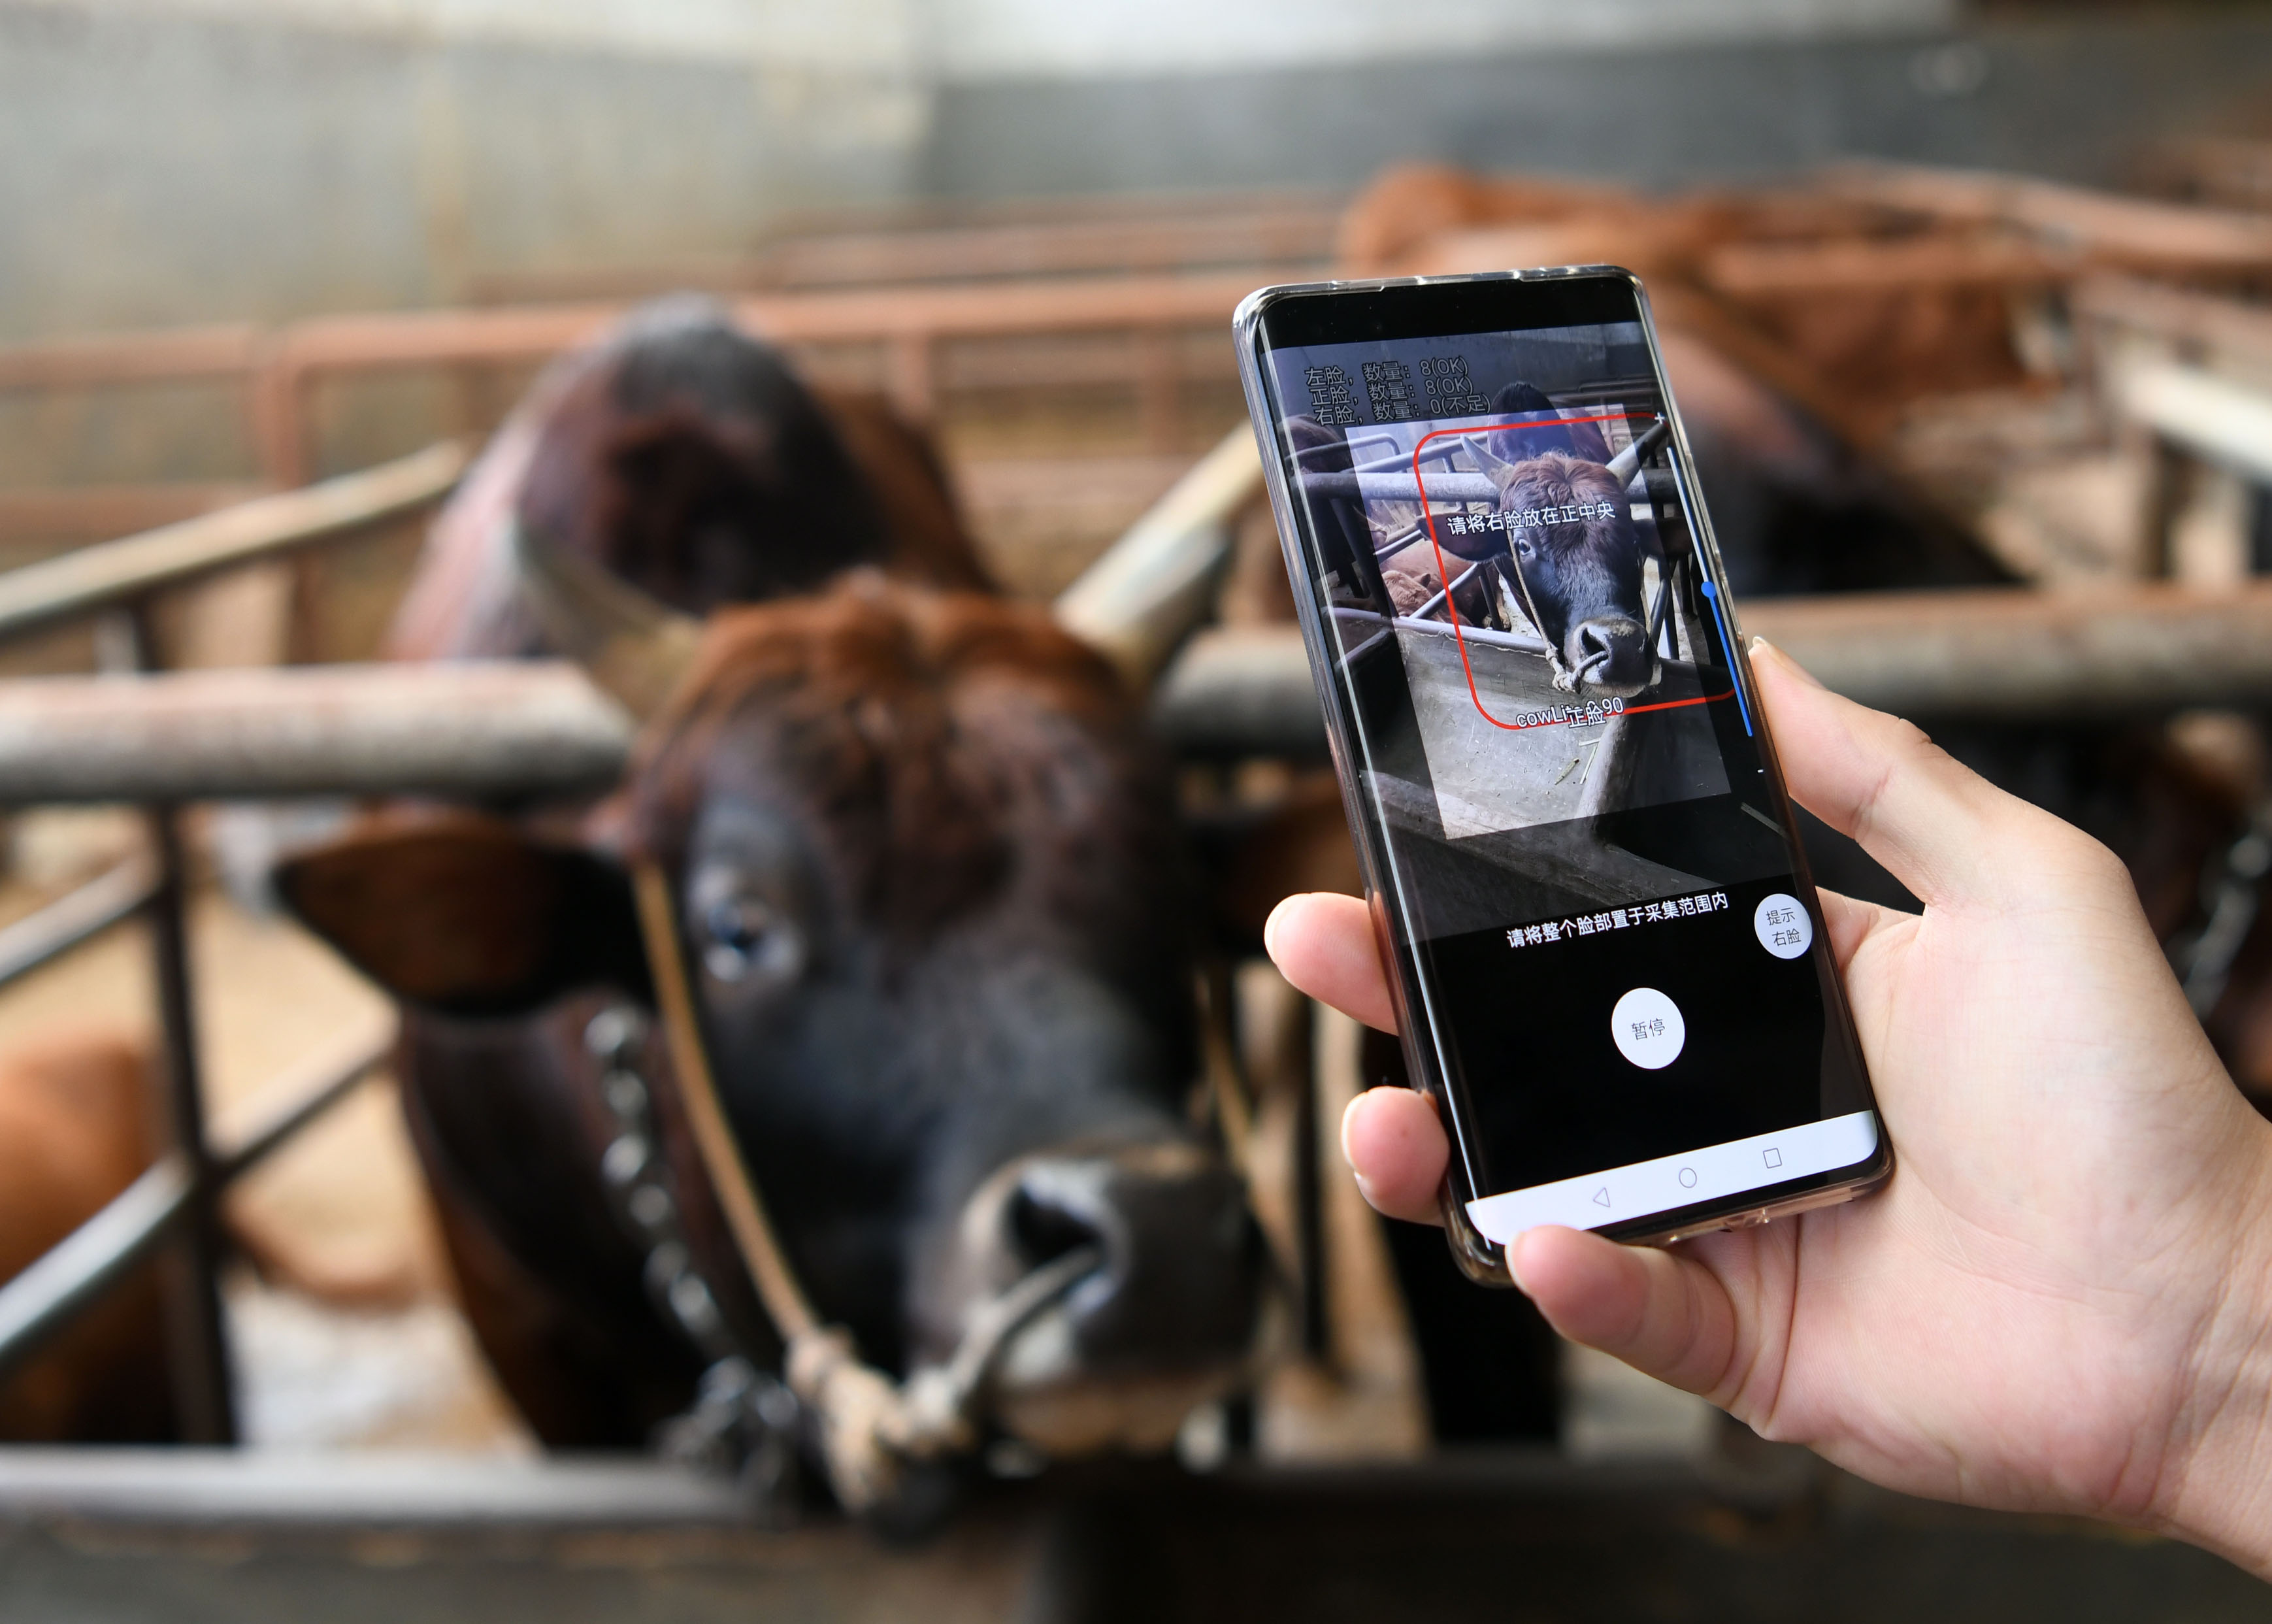 牛の顔認証 で保険手続きがより確実に 広西チワン族自治区 写真5枚 国際ニュース Afpbb News